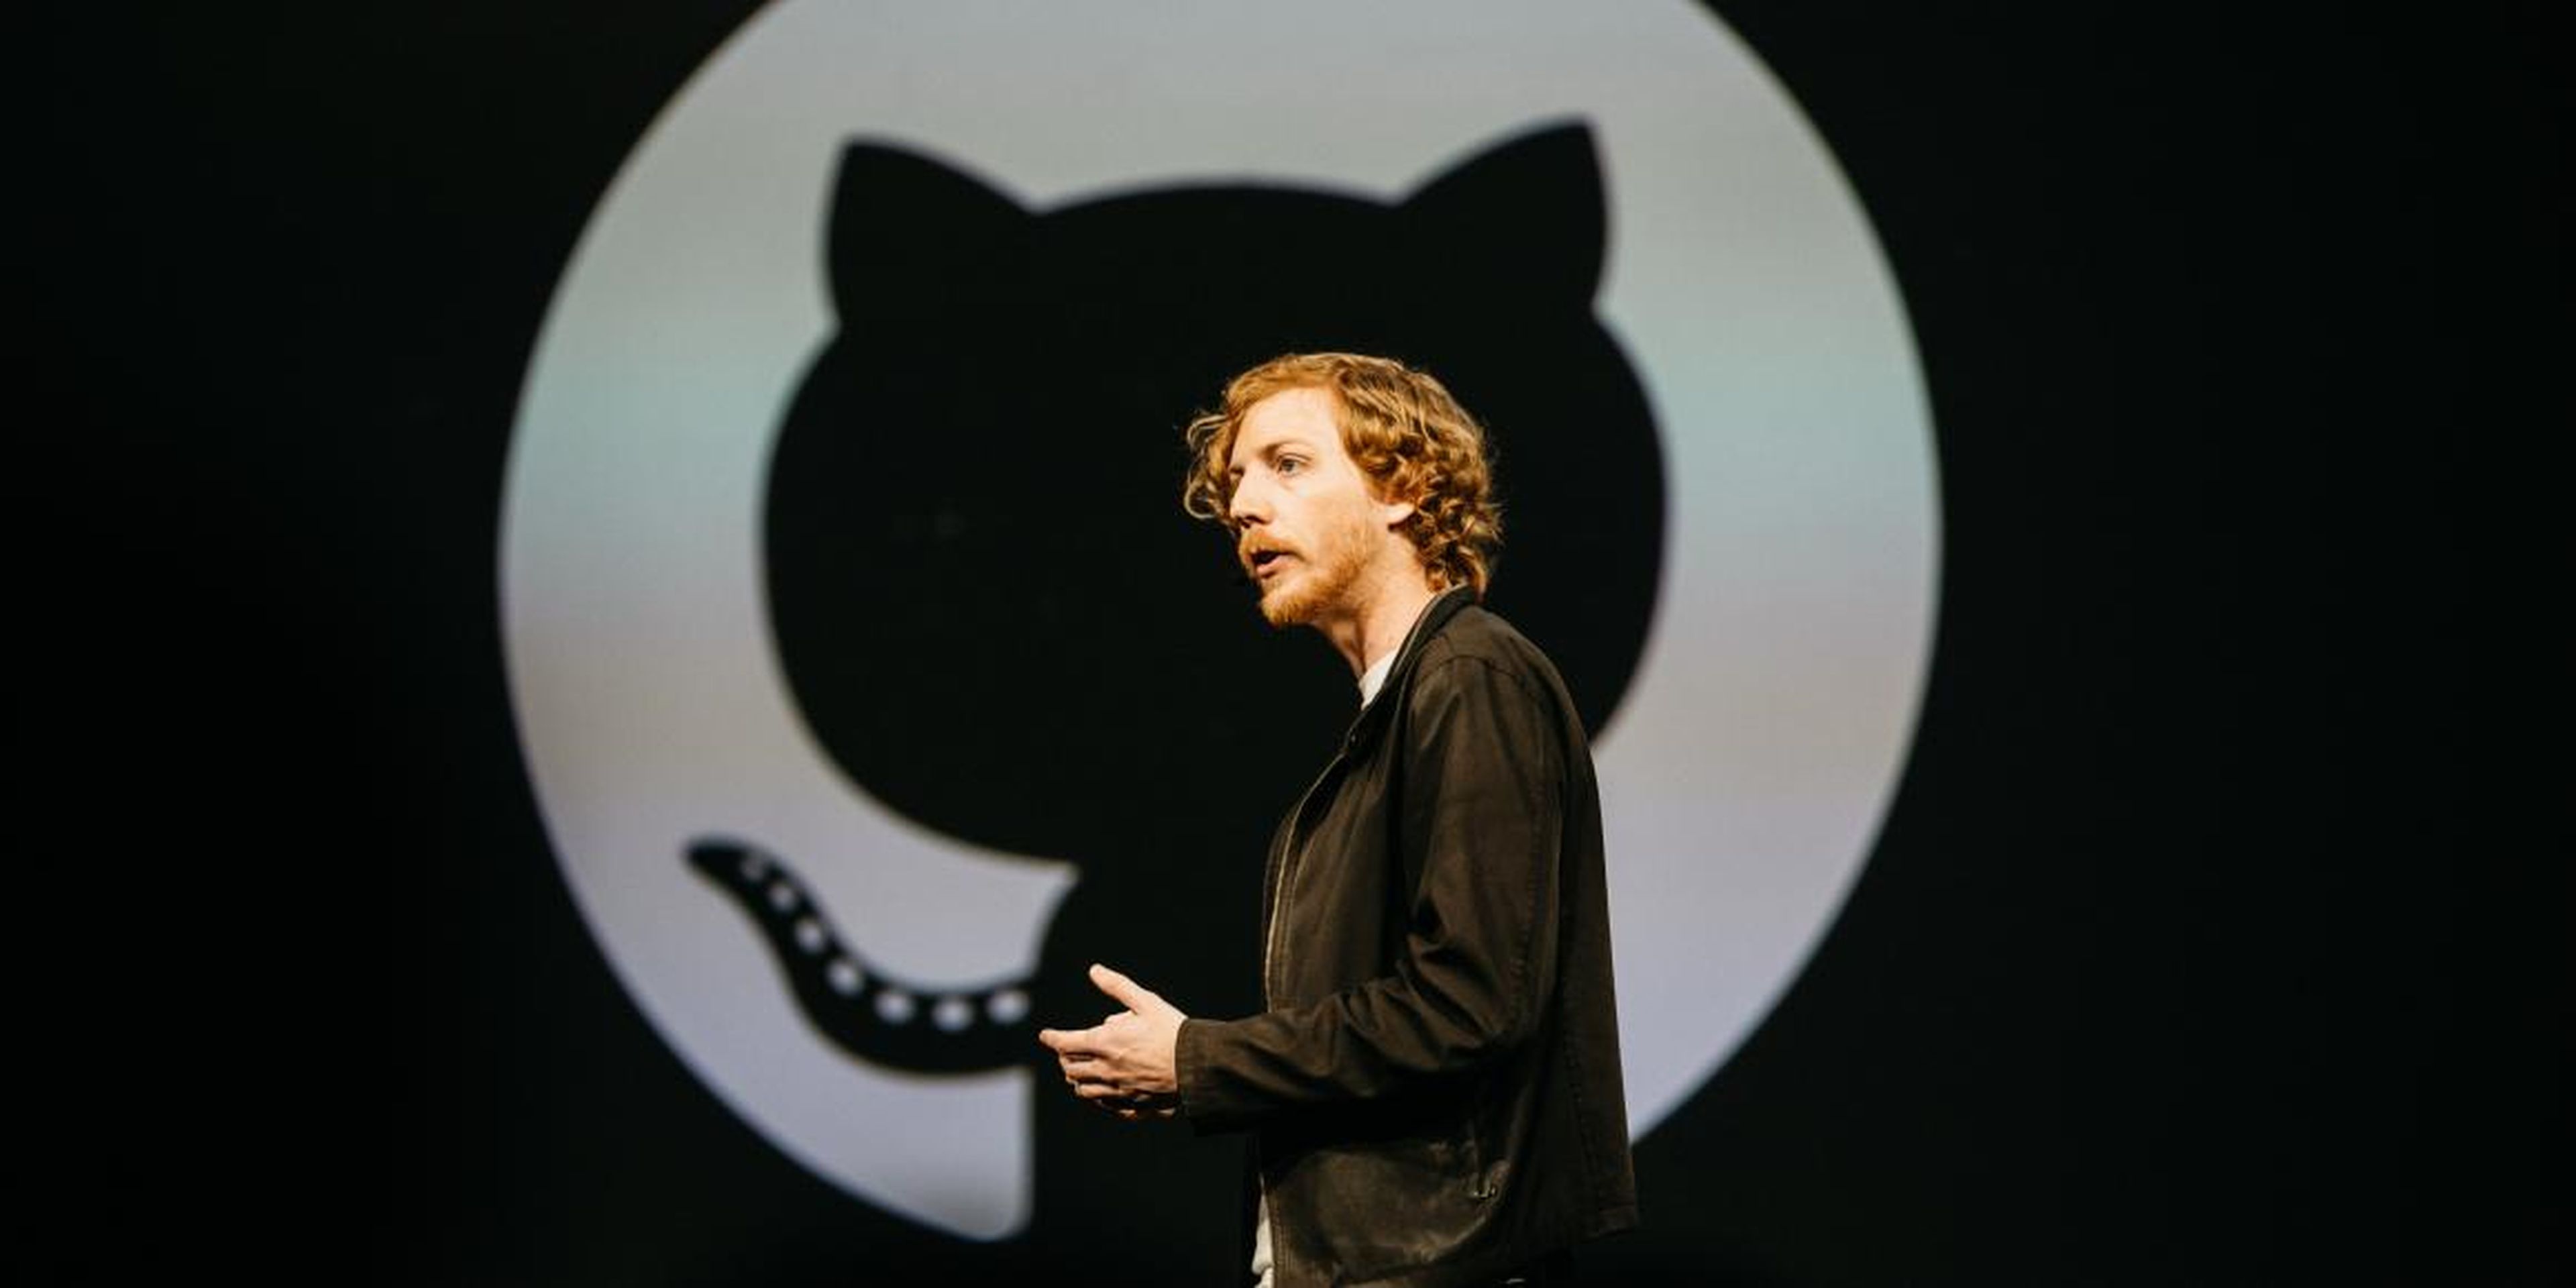 GitHub cofounder CEO Chris Wanstrath